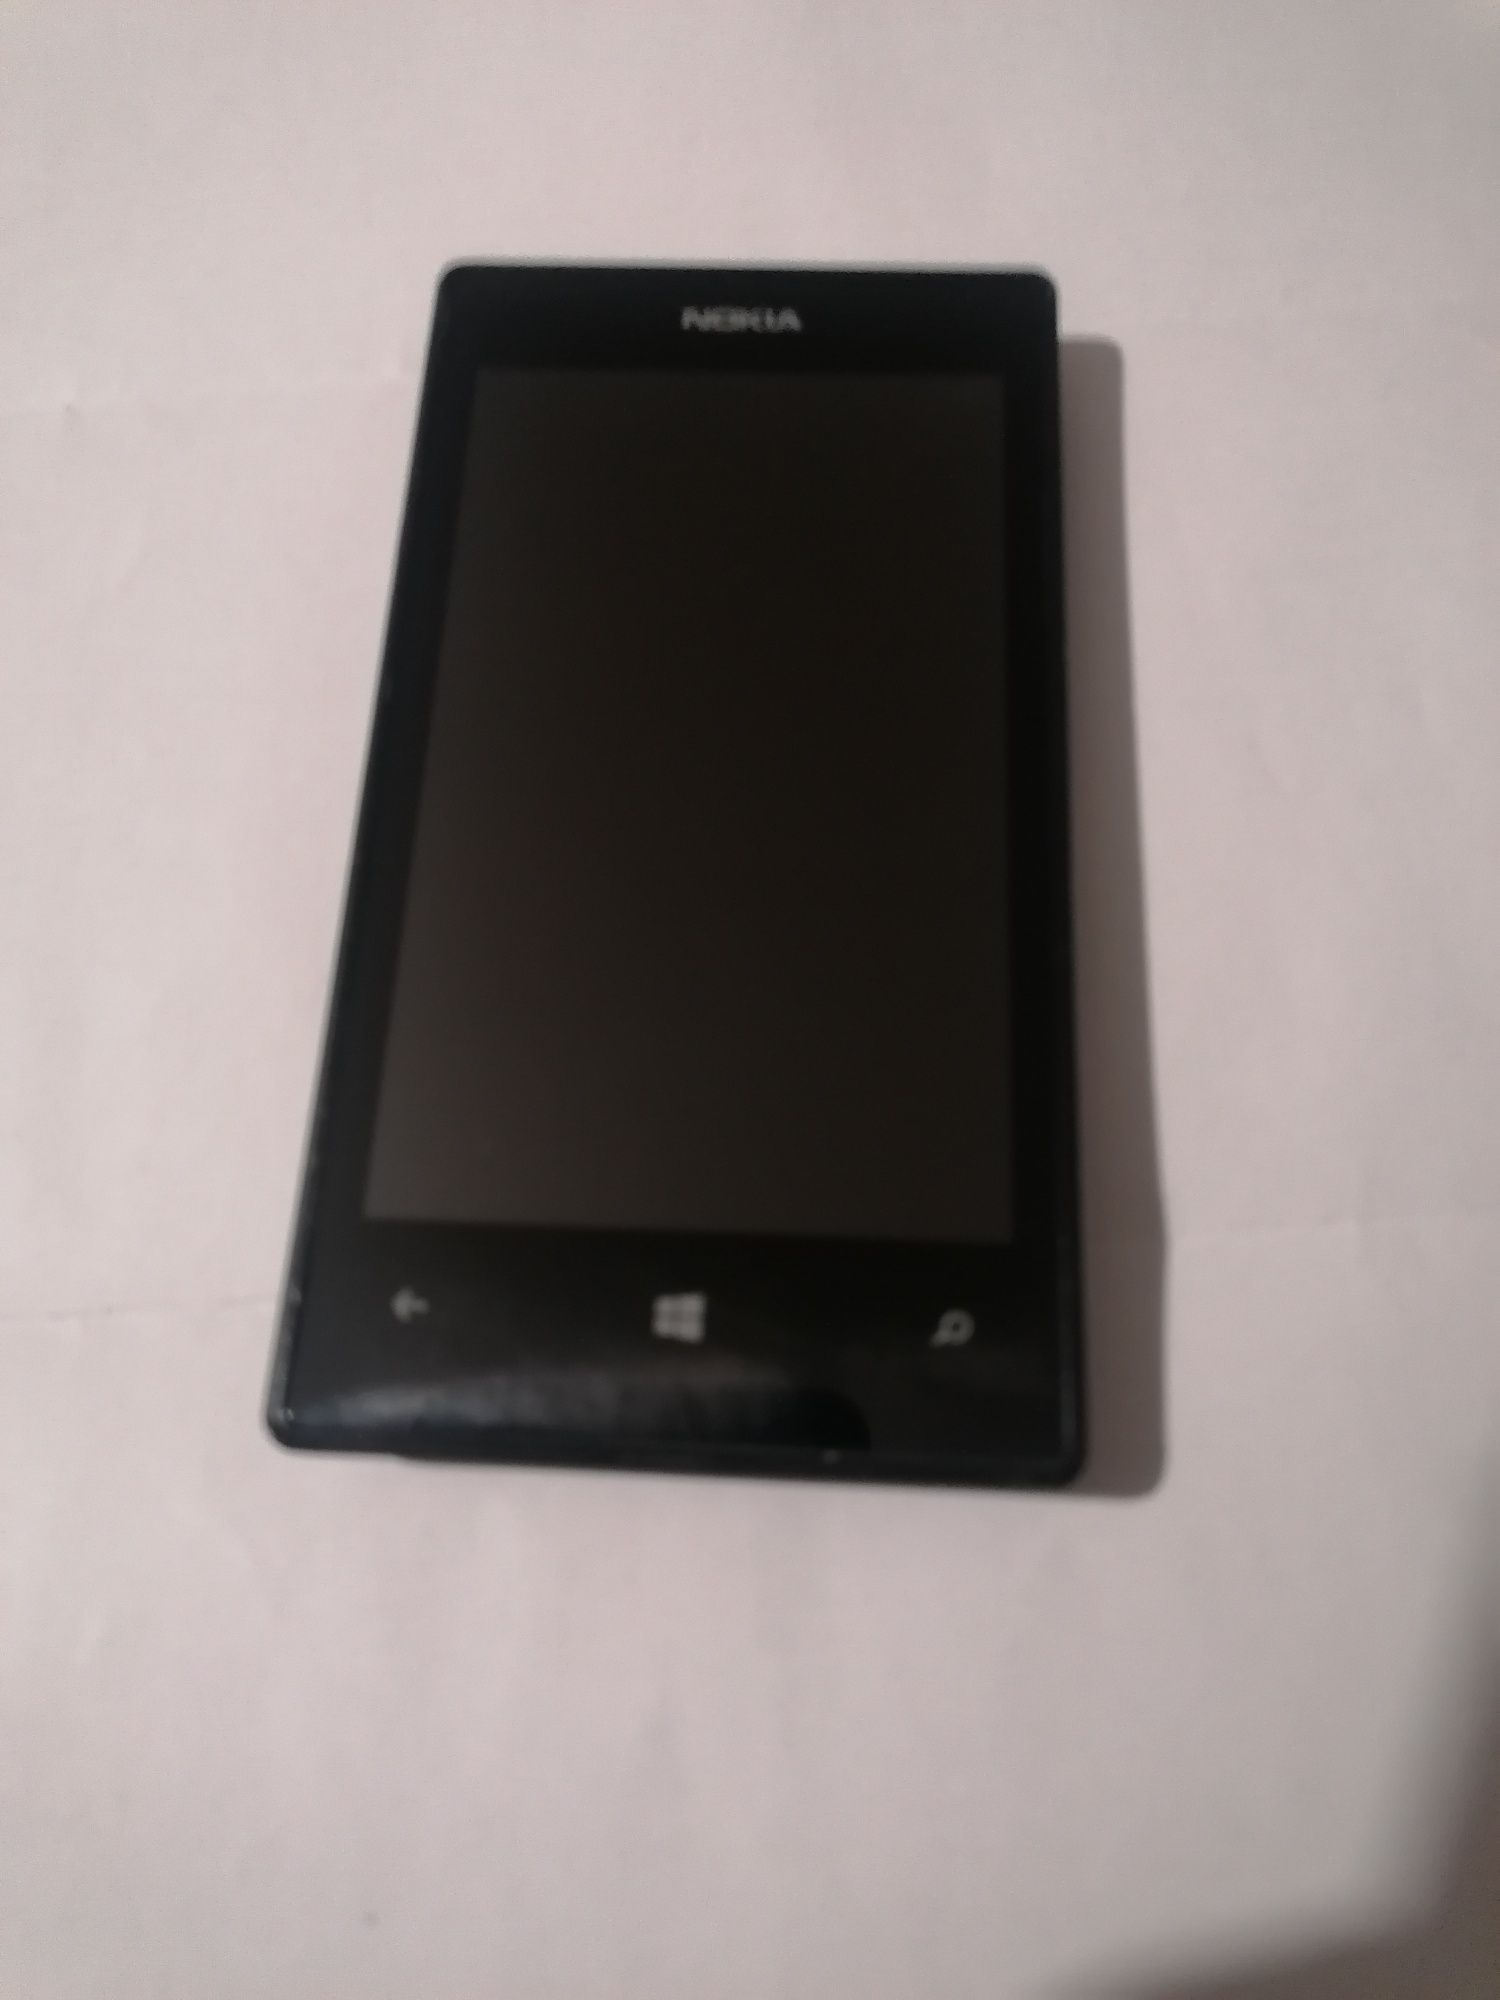 Nokia Lumia 520 windows